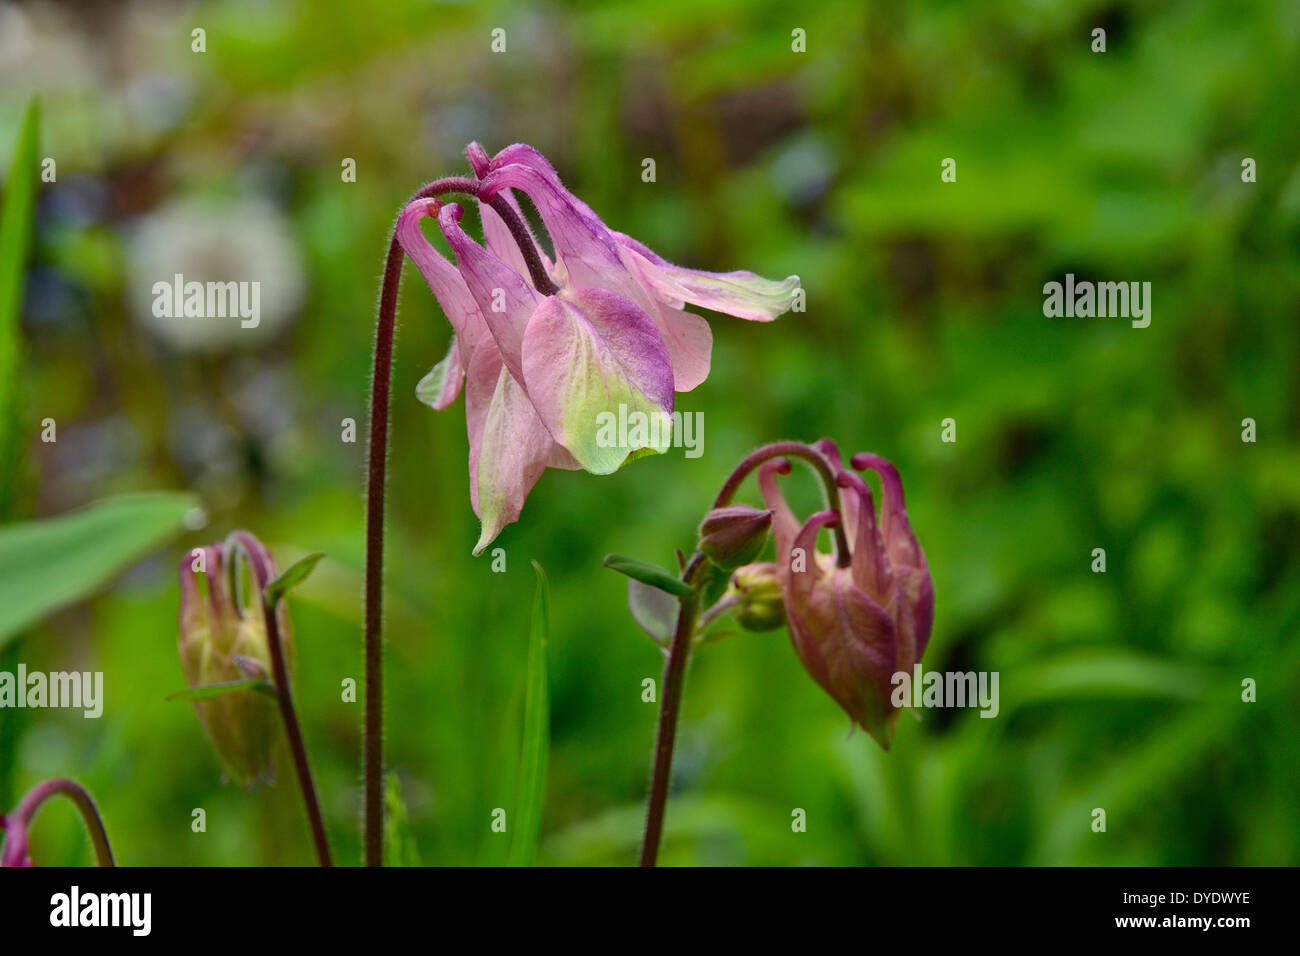 Columbine (Aquilegia) in bloom in a garden. Stock Photo